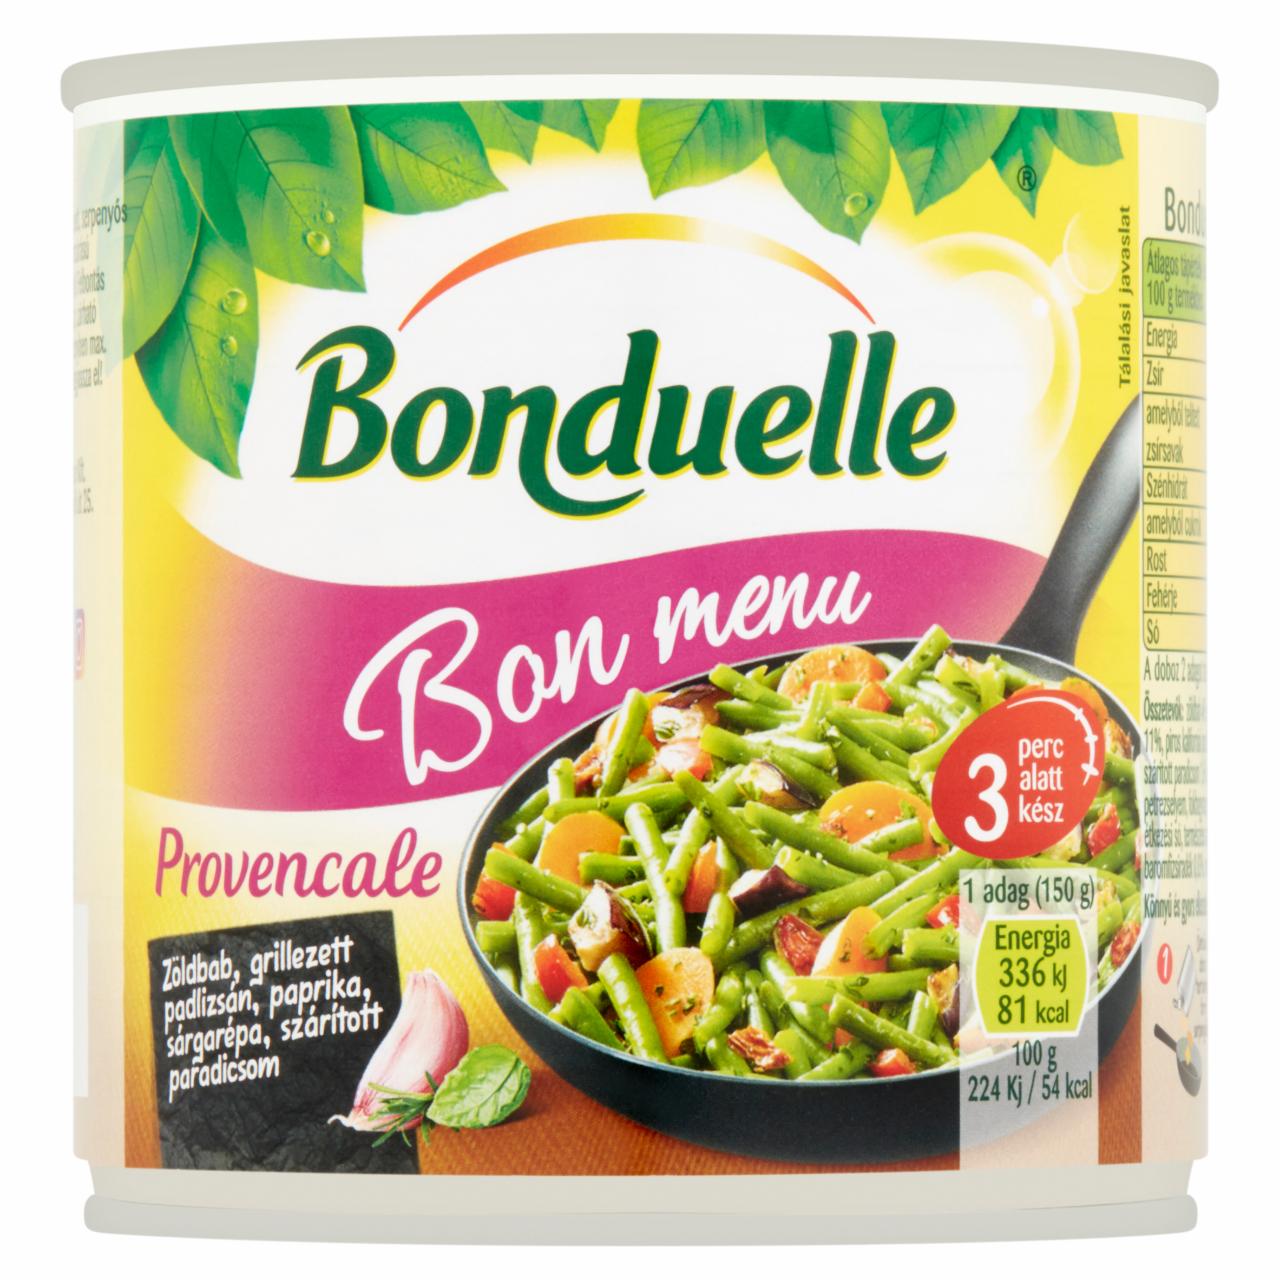 Képek - Bonduelle Bon Menu Provencale zöldségkeverék 300 g